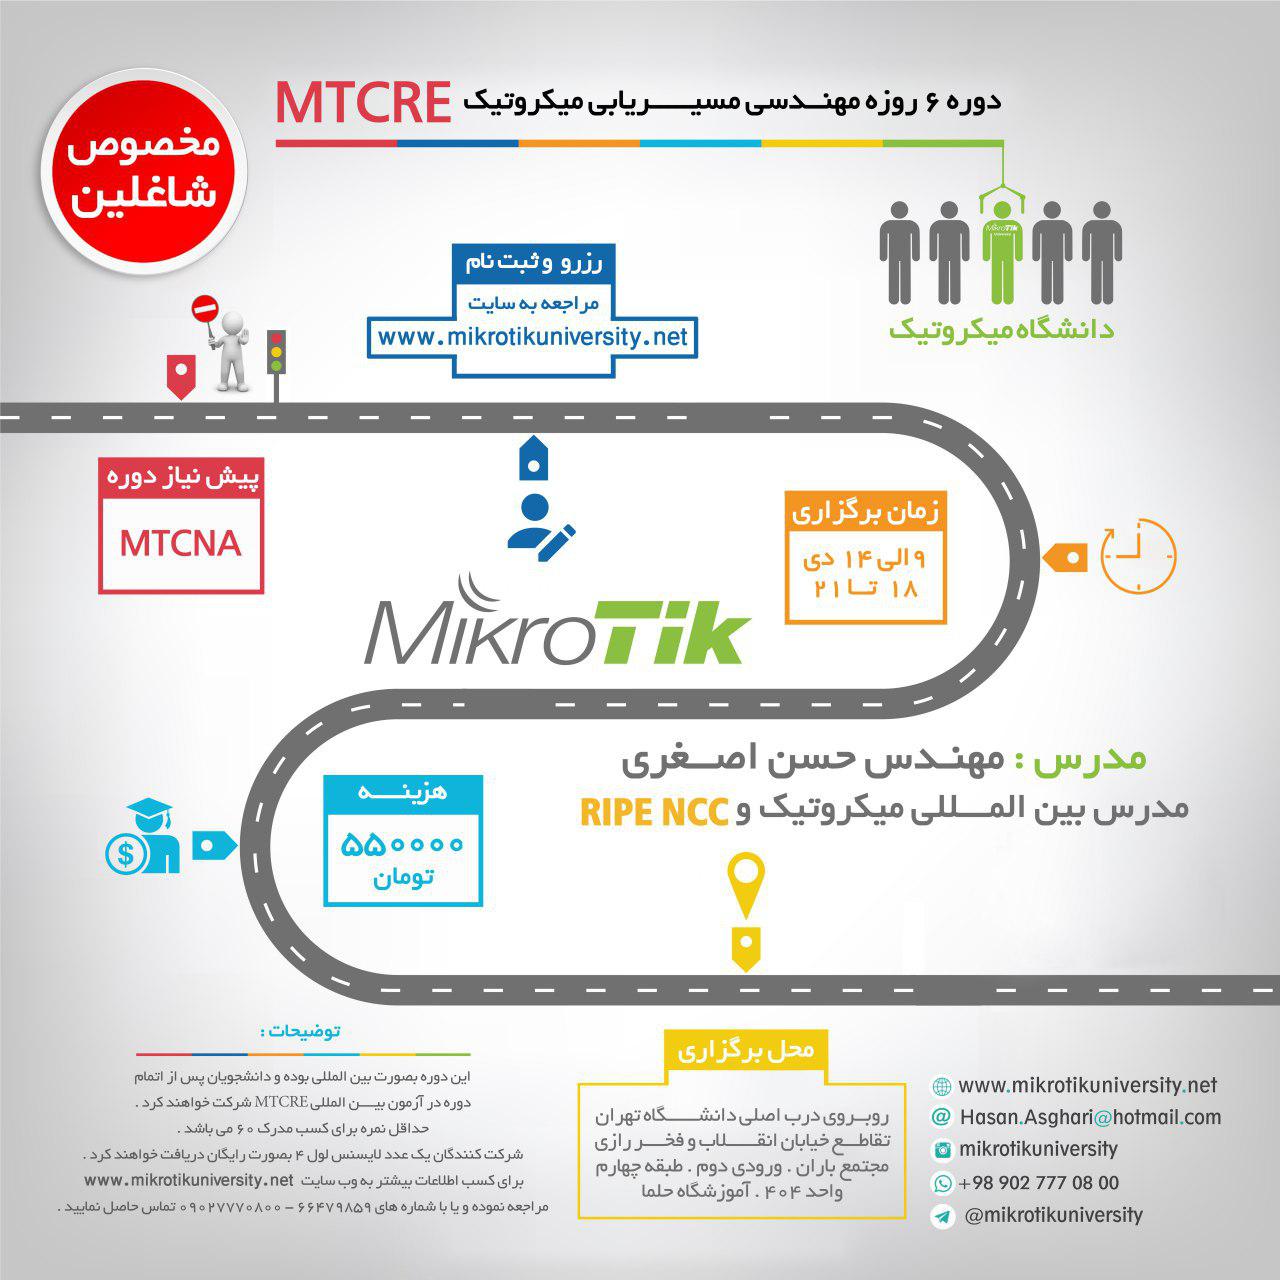 Mikrotikuniversity-MTCRE-9-14-aban-96